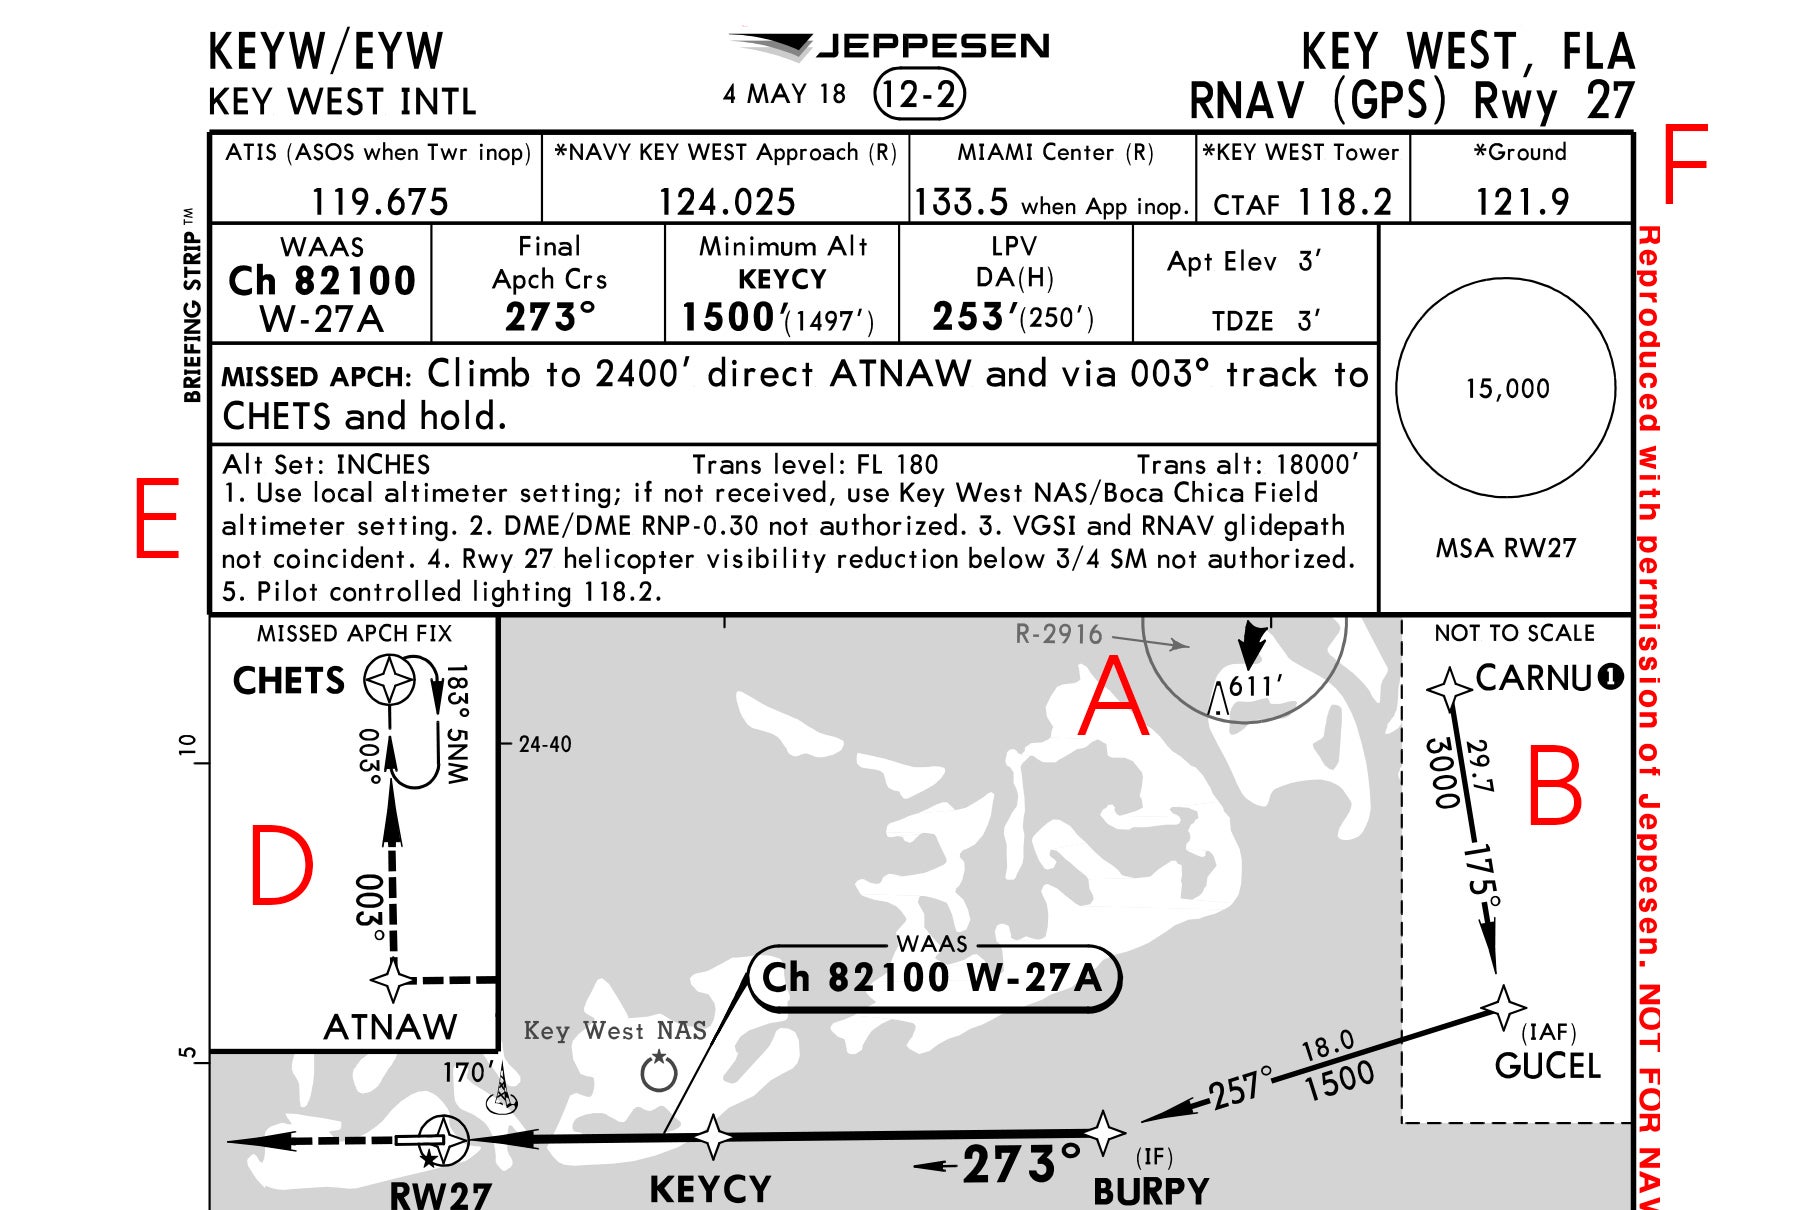 Key West RNAV (GPS) Runway 27